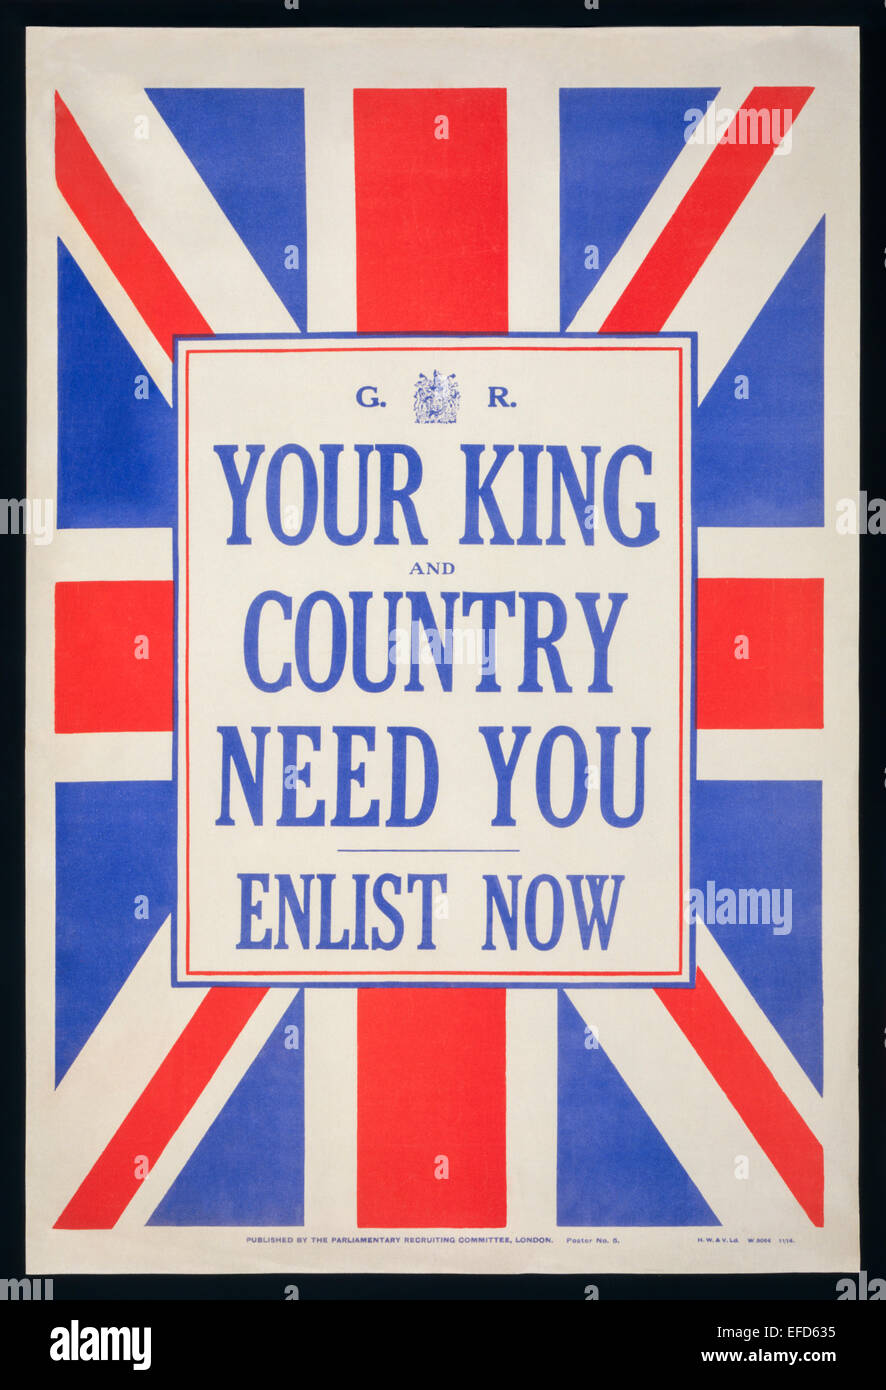 "Ihr König und Vaterland brauchen Sie - jetzt eintragen" parlamentarischen Recruiting Committee Poster Nr. 5, 1914. Siehe Beschreibung für mehr Informationen. Stockfoto